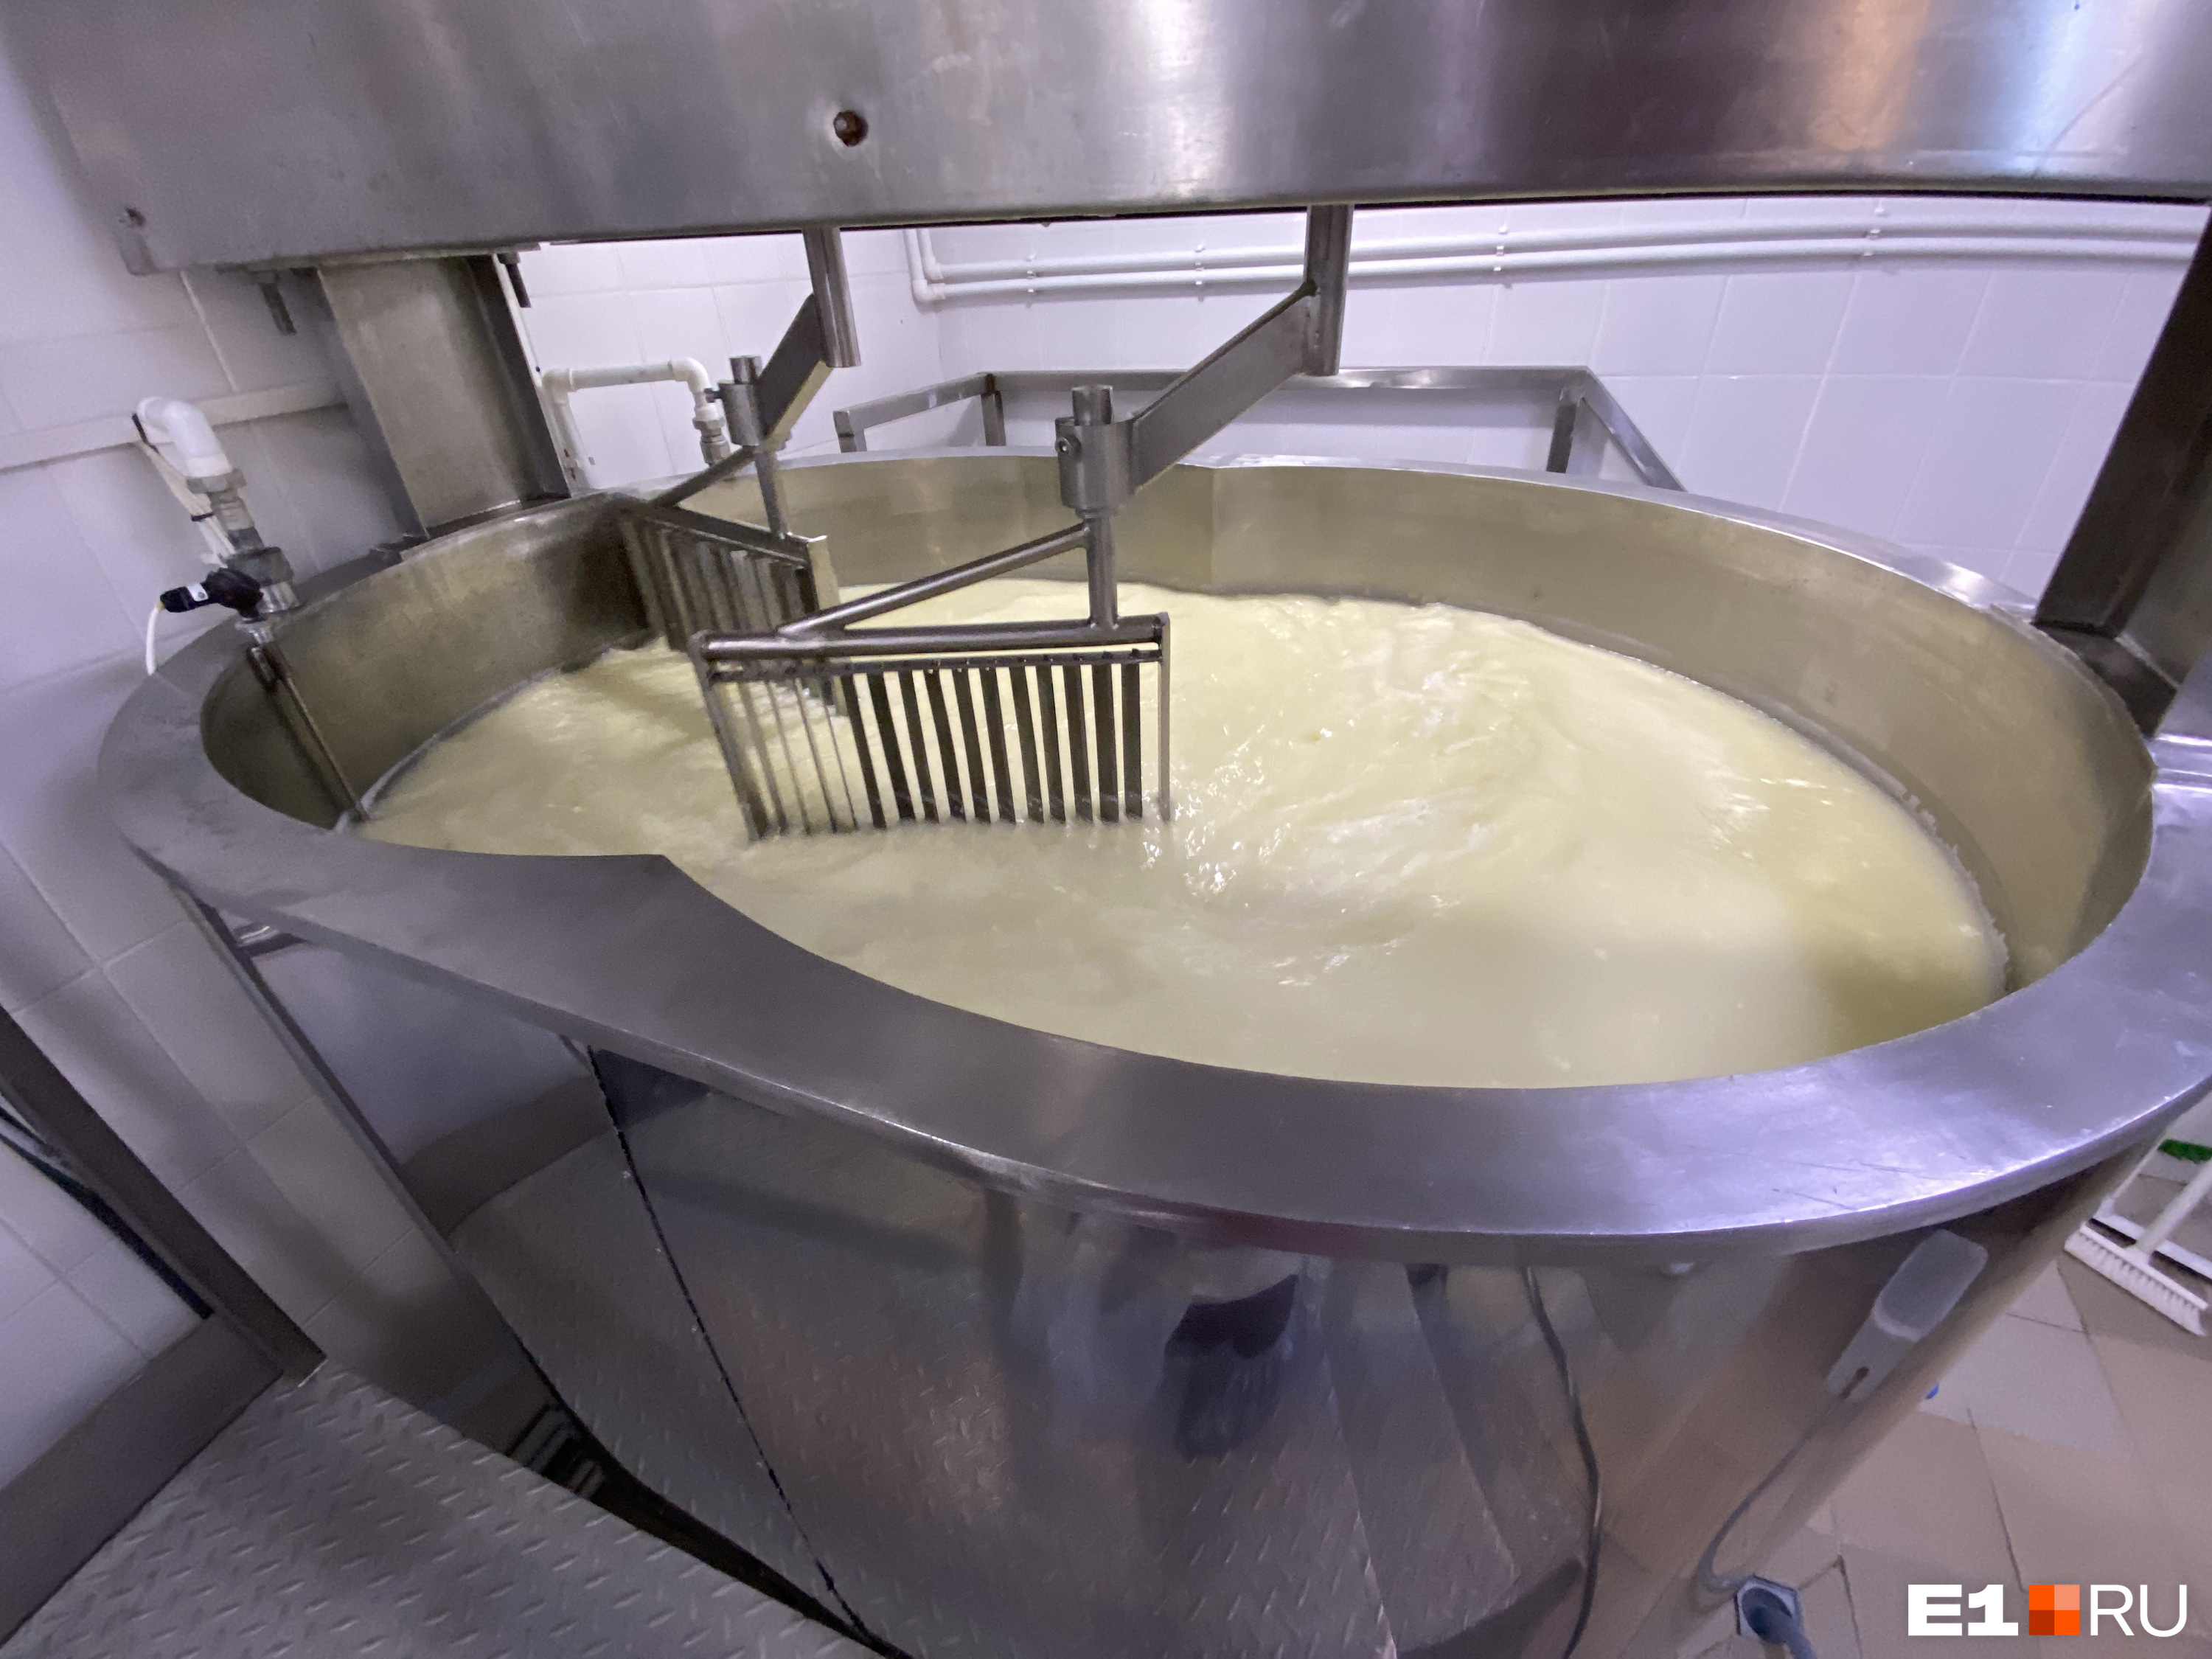 В сыродельной ванне пастеризованное молоко смешивают с закваской. Позже сыворотку отделяют от сырного зерна